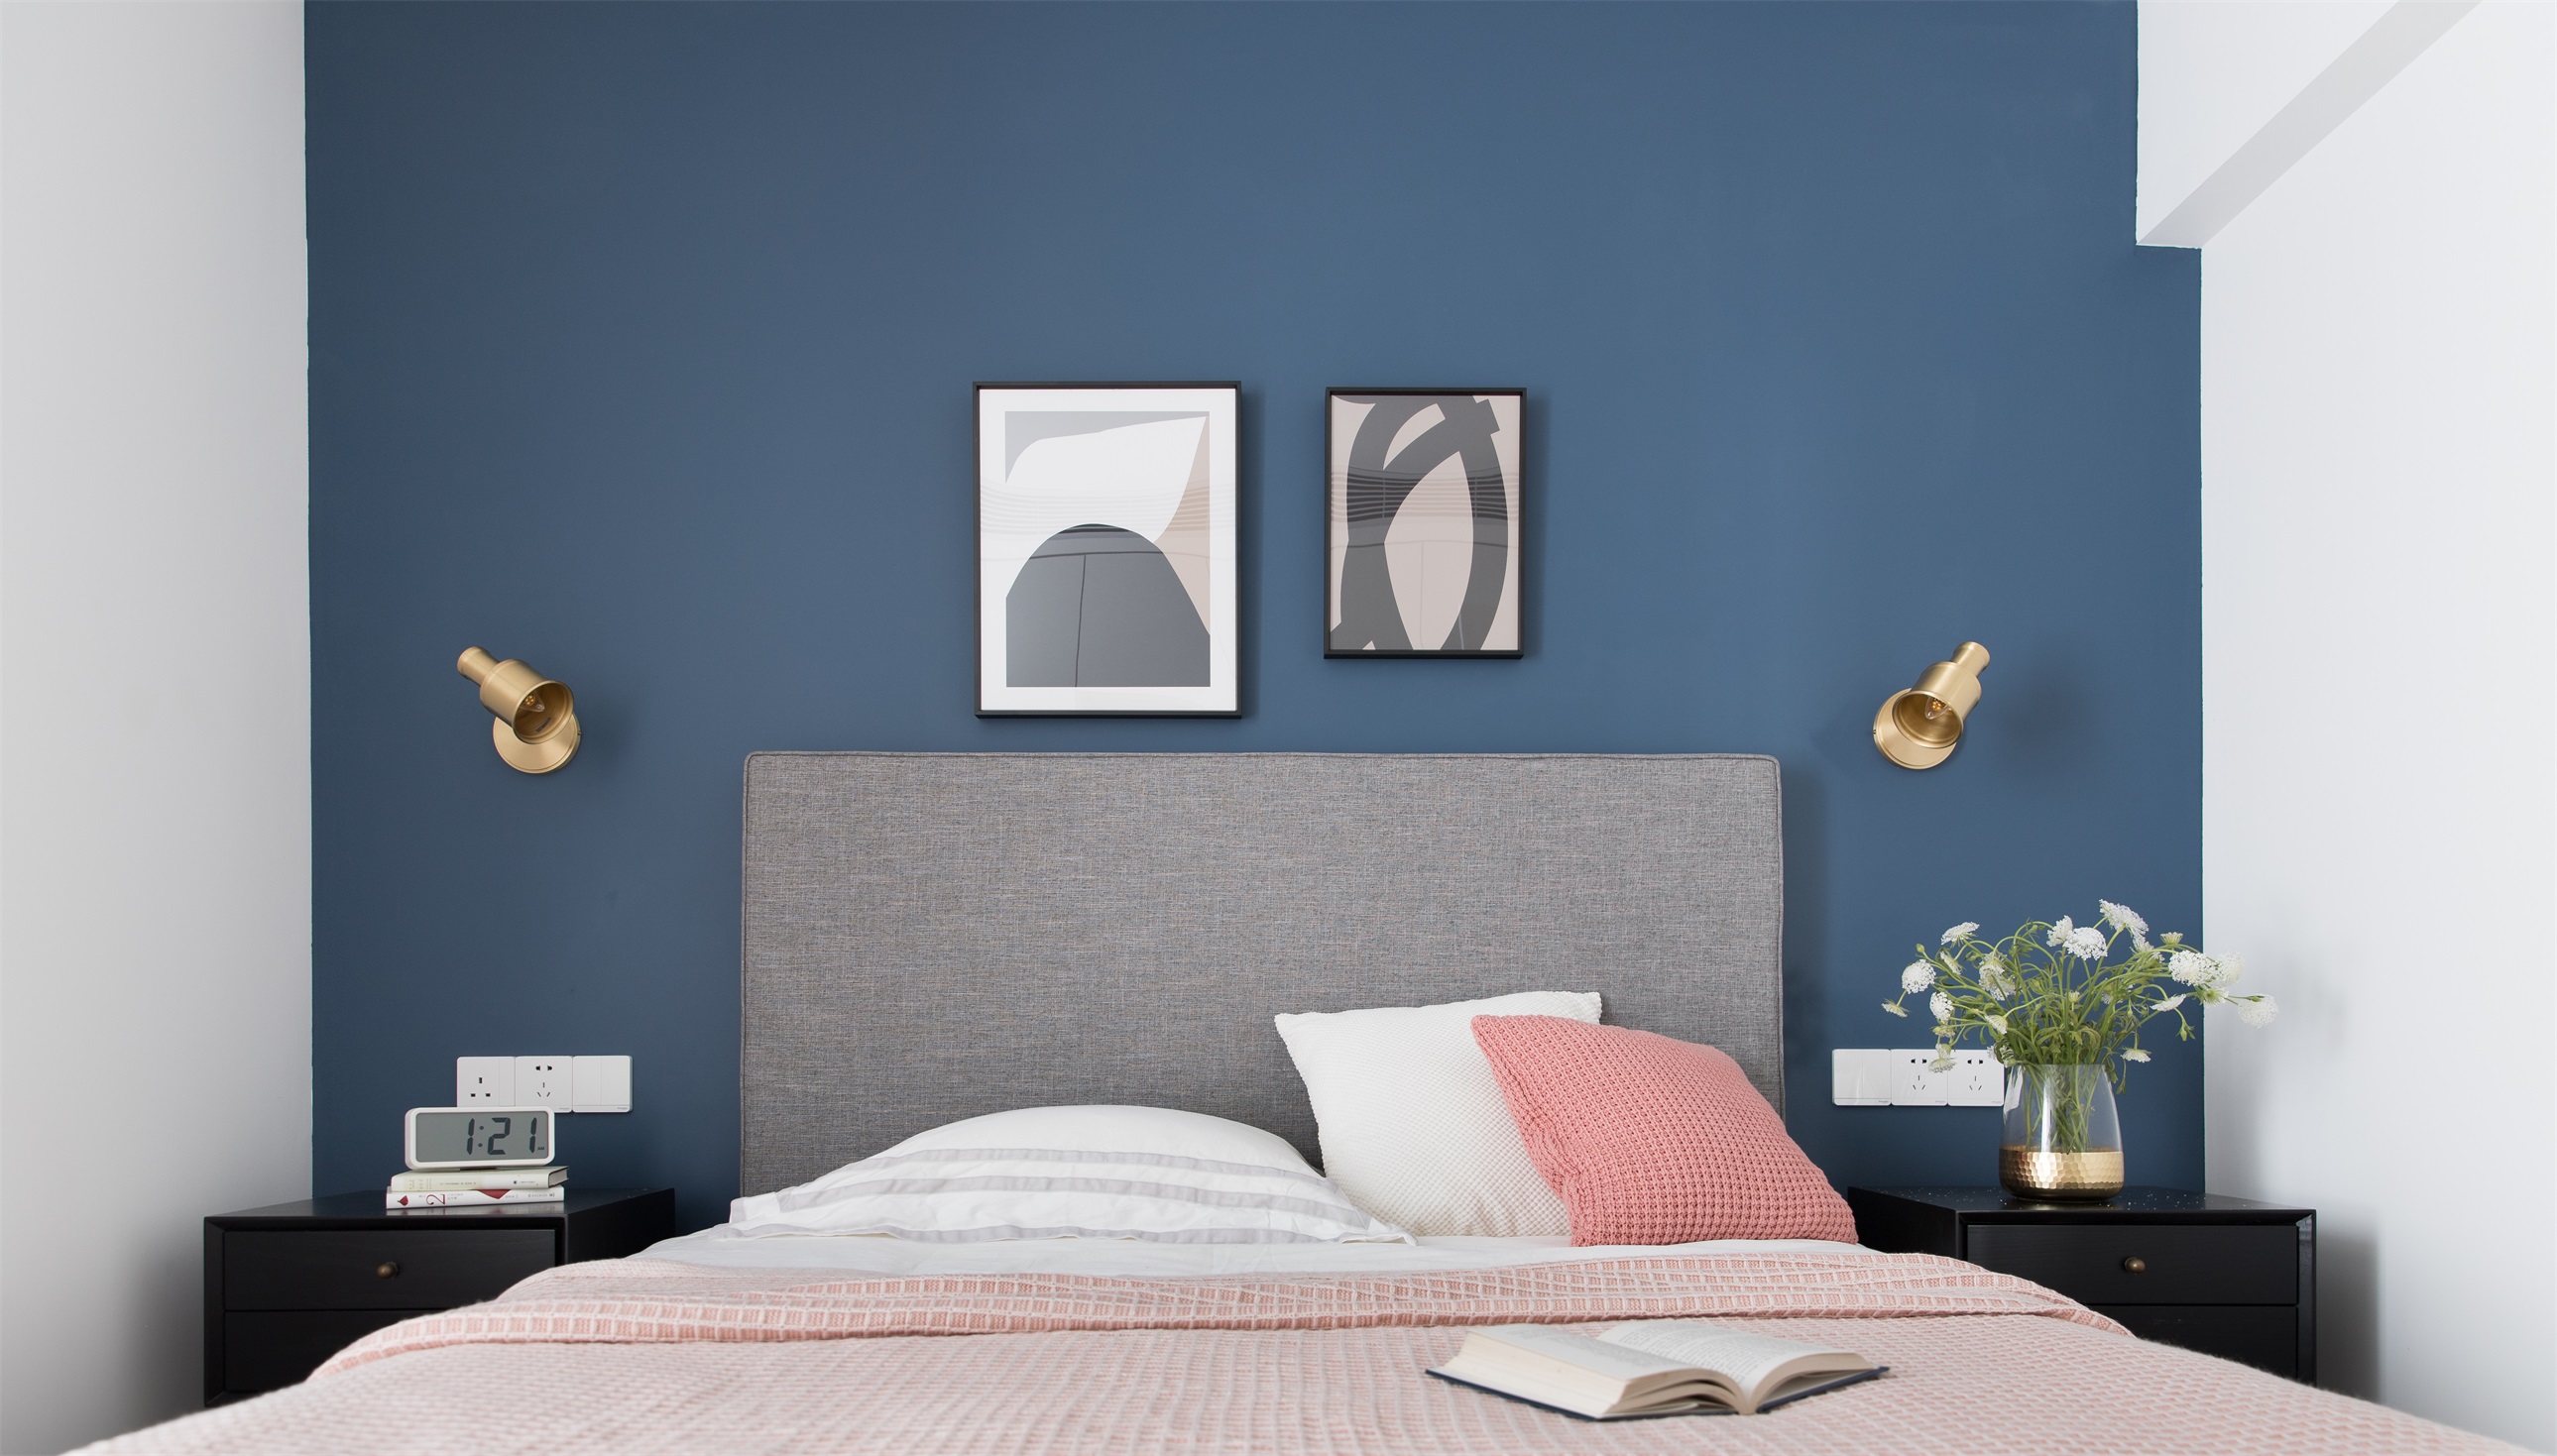 侧卧配色明亮,蓝色背景搭配灰色床头,粉色床品,带来强烈的视觉冲击